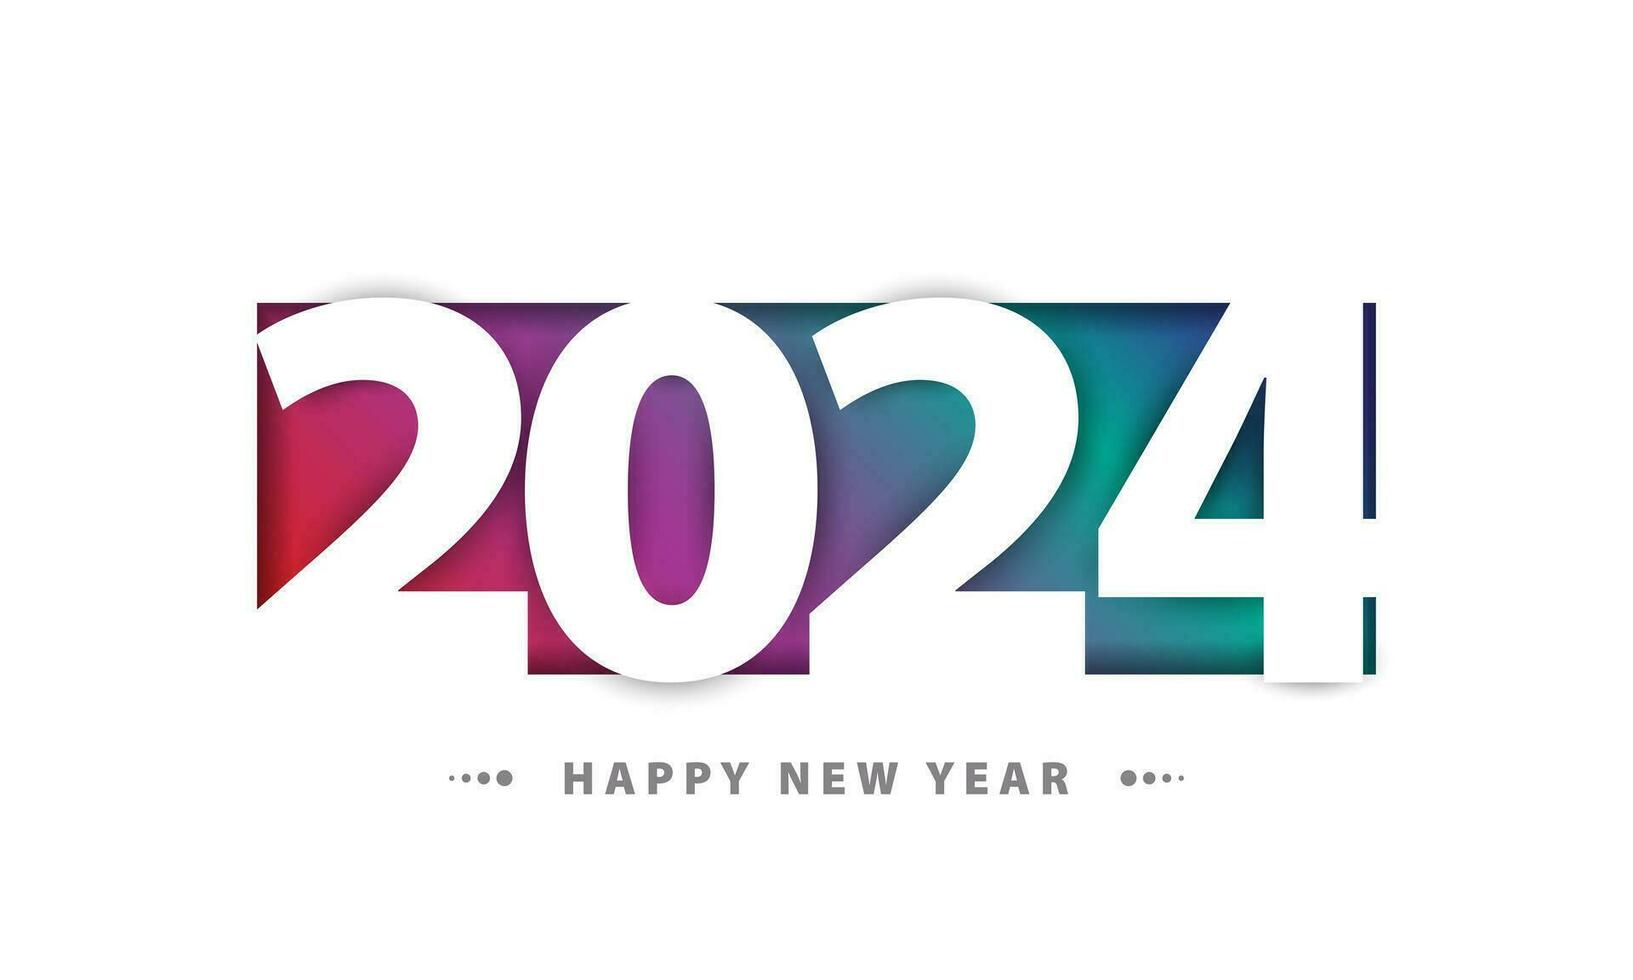 Diseño de fondo de feliz año nuevo 2024. vector